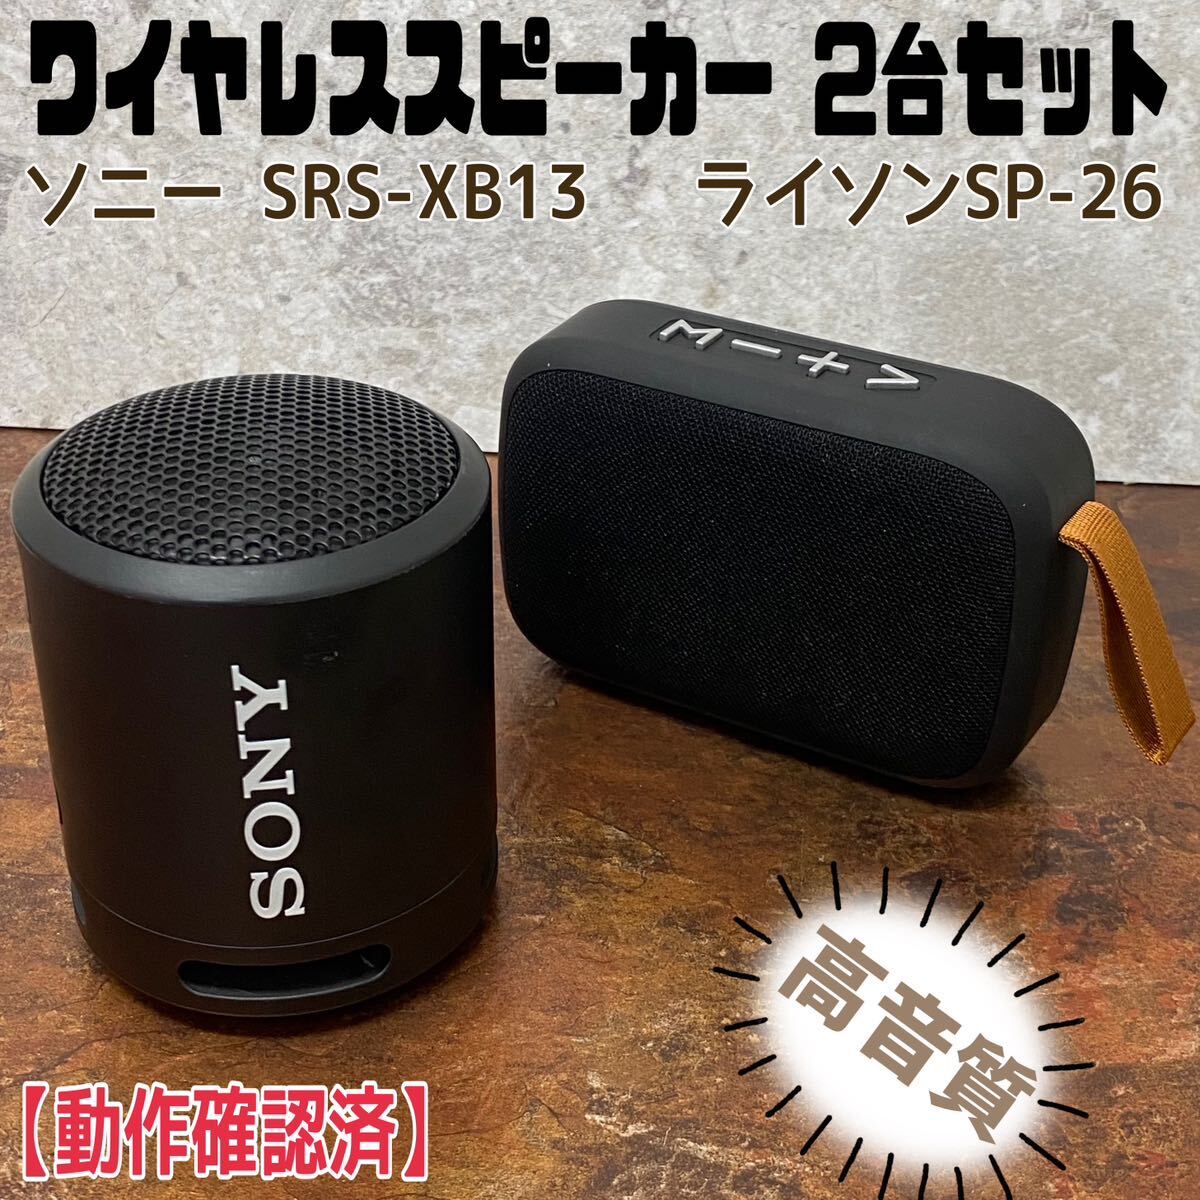 MK# беспроводной динамик 2 шт. комплект SONY SRS-XB13 LITHON SP-26 смартфон монитор музыка просмотр высококачественный звук compact мобильный . рабочее состояние подтверждено б/у 